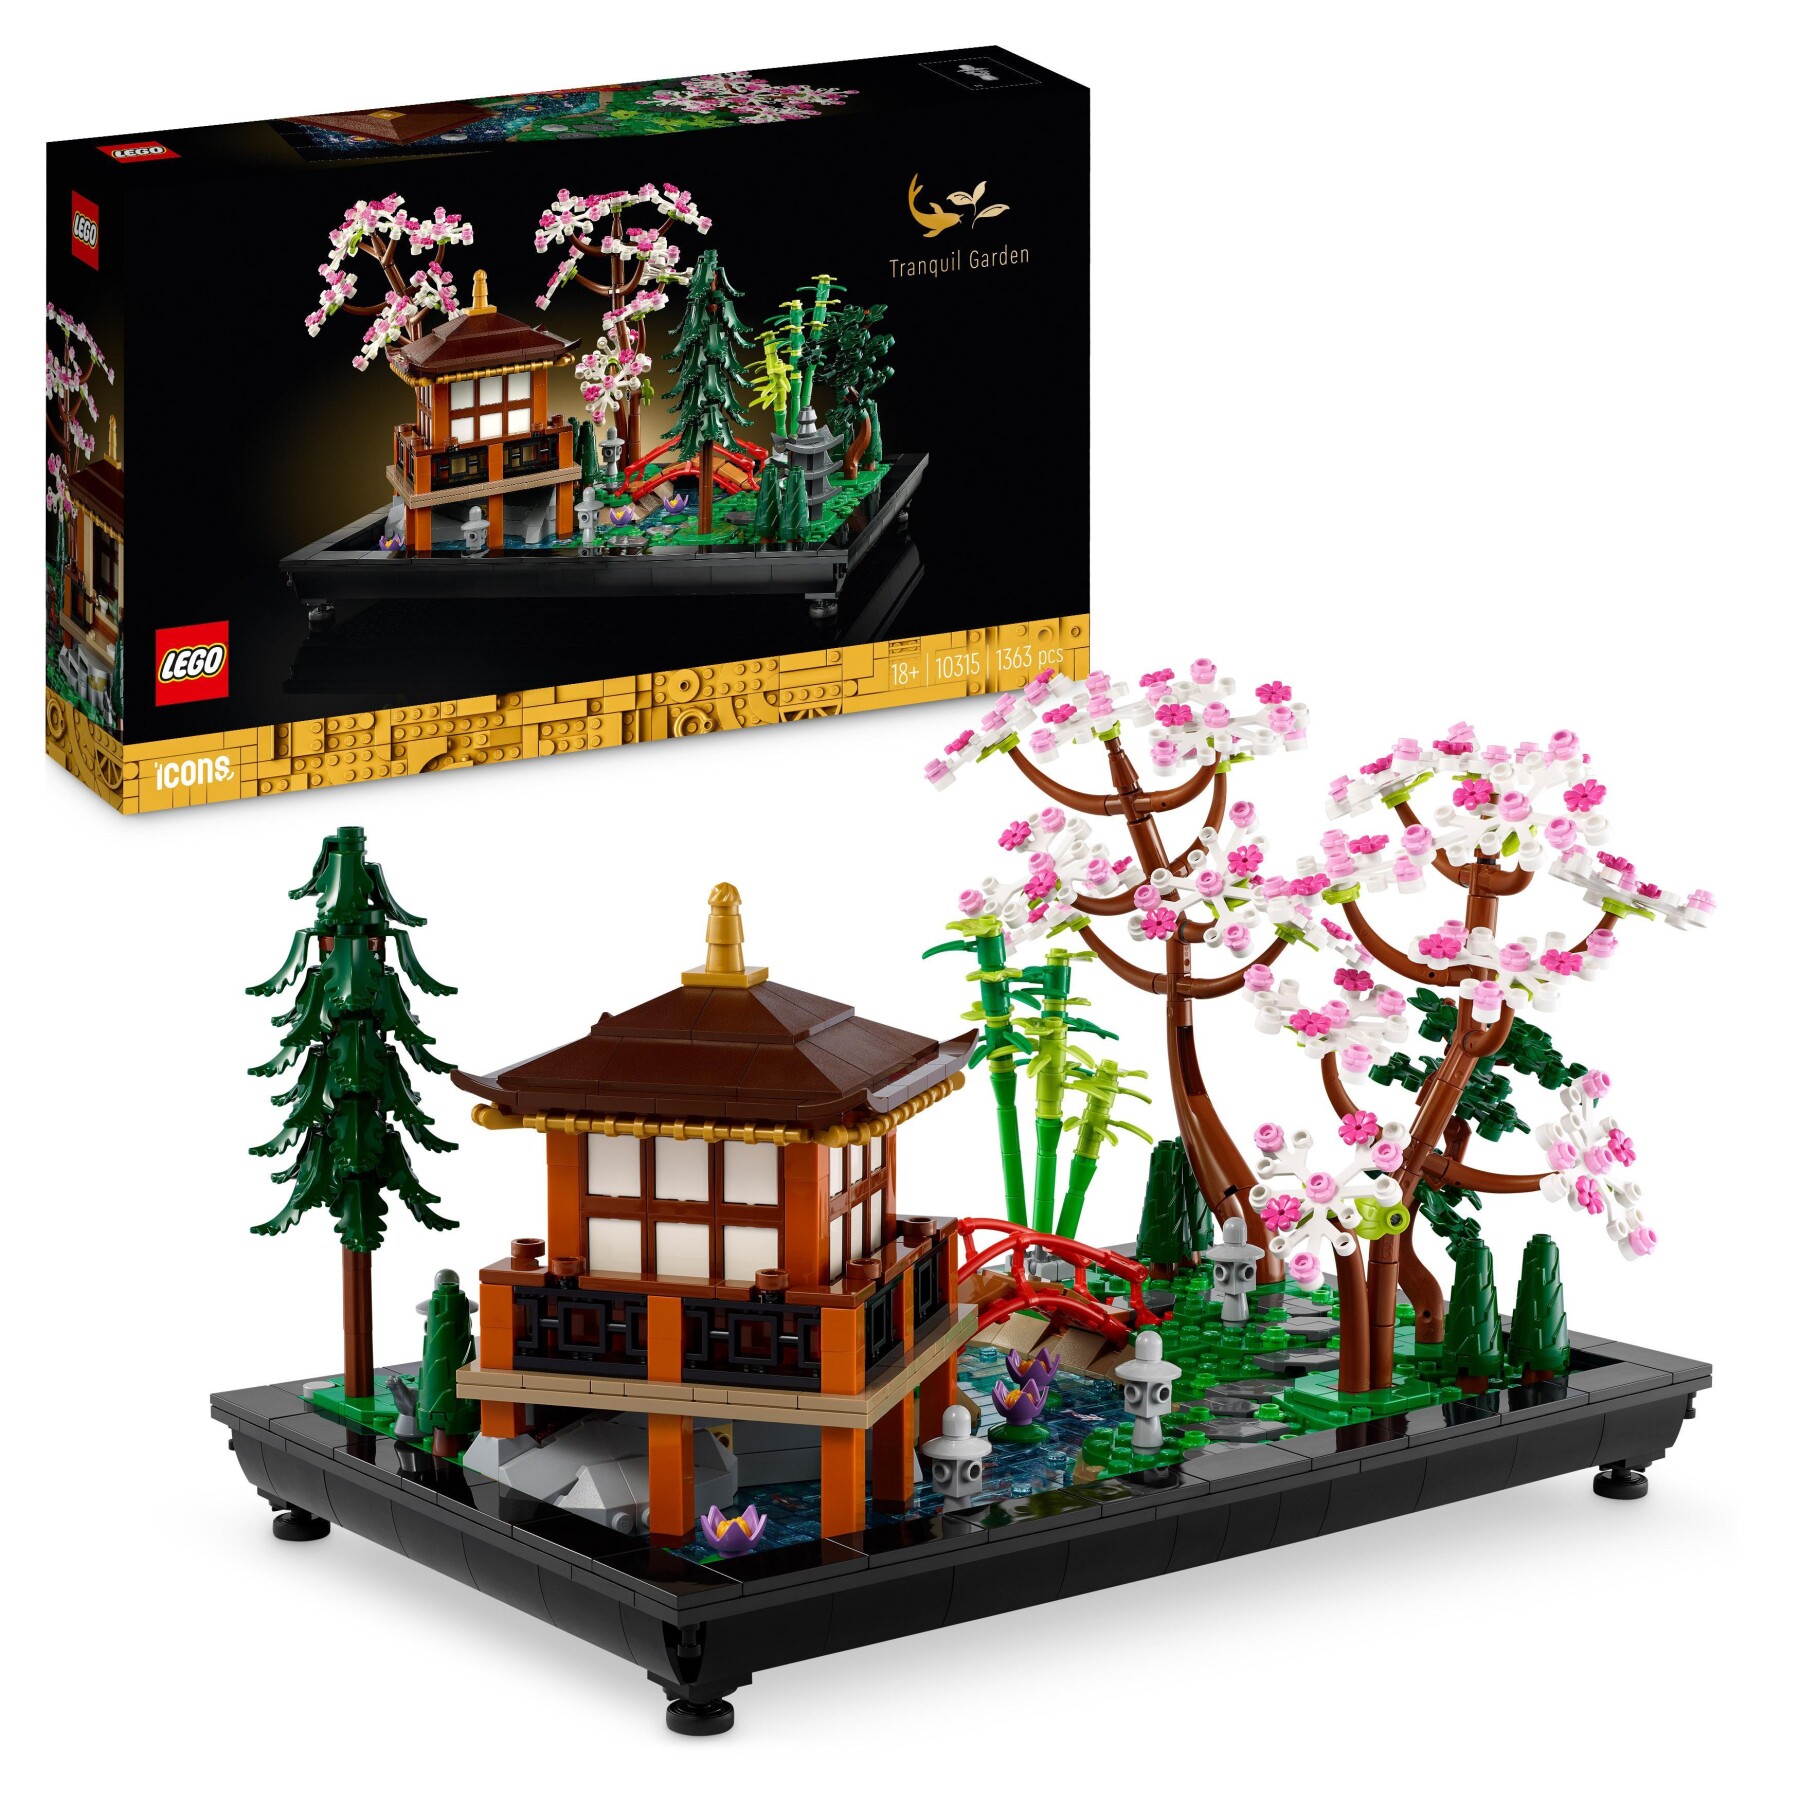 Lego icons 10315 il giardino tranquillo, kit giardino botanico zen per adulti con fiori di loto, regalo per donna e uomo - Lego, LEGO ICONS